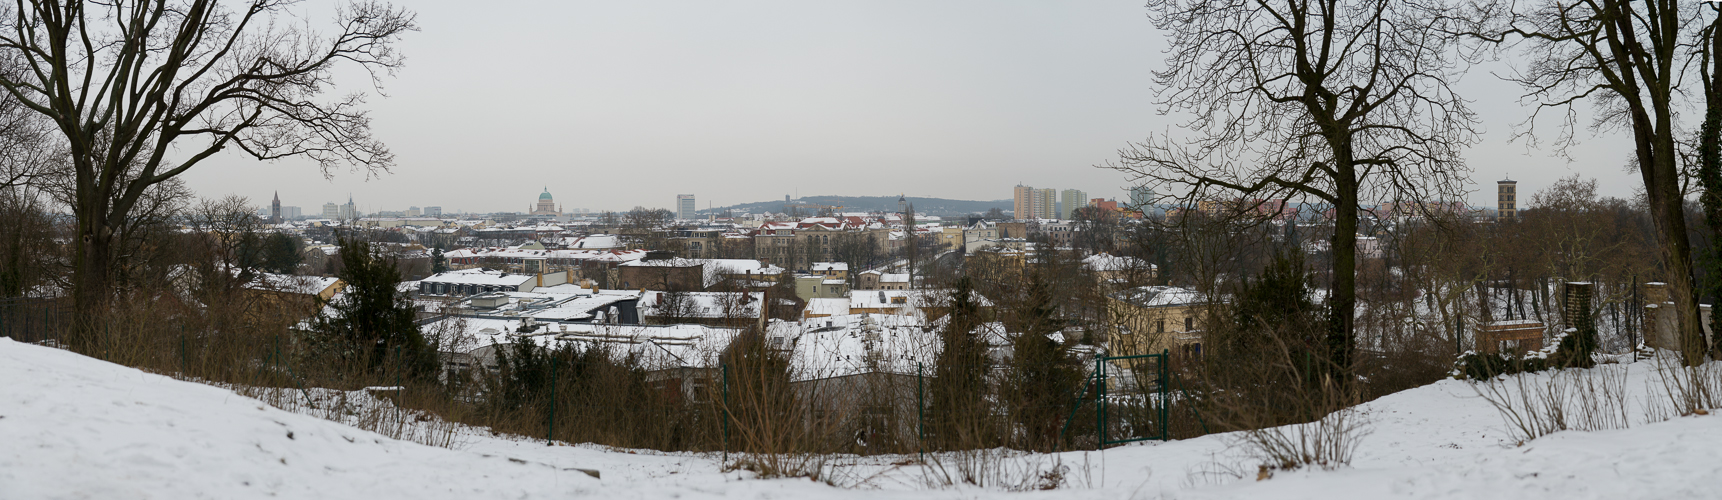 Potsdam Panorama (Winter edition)